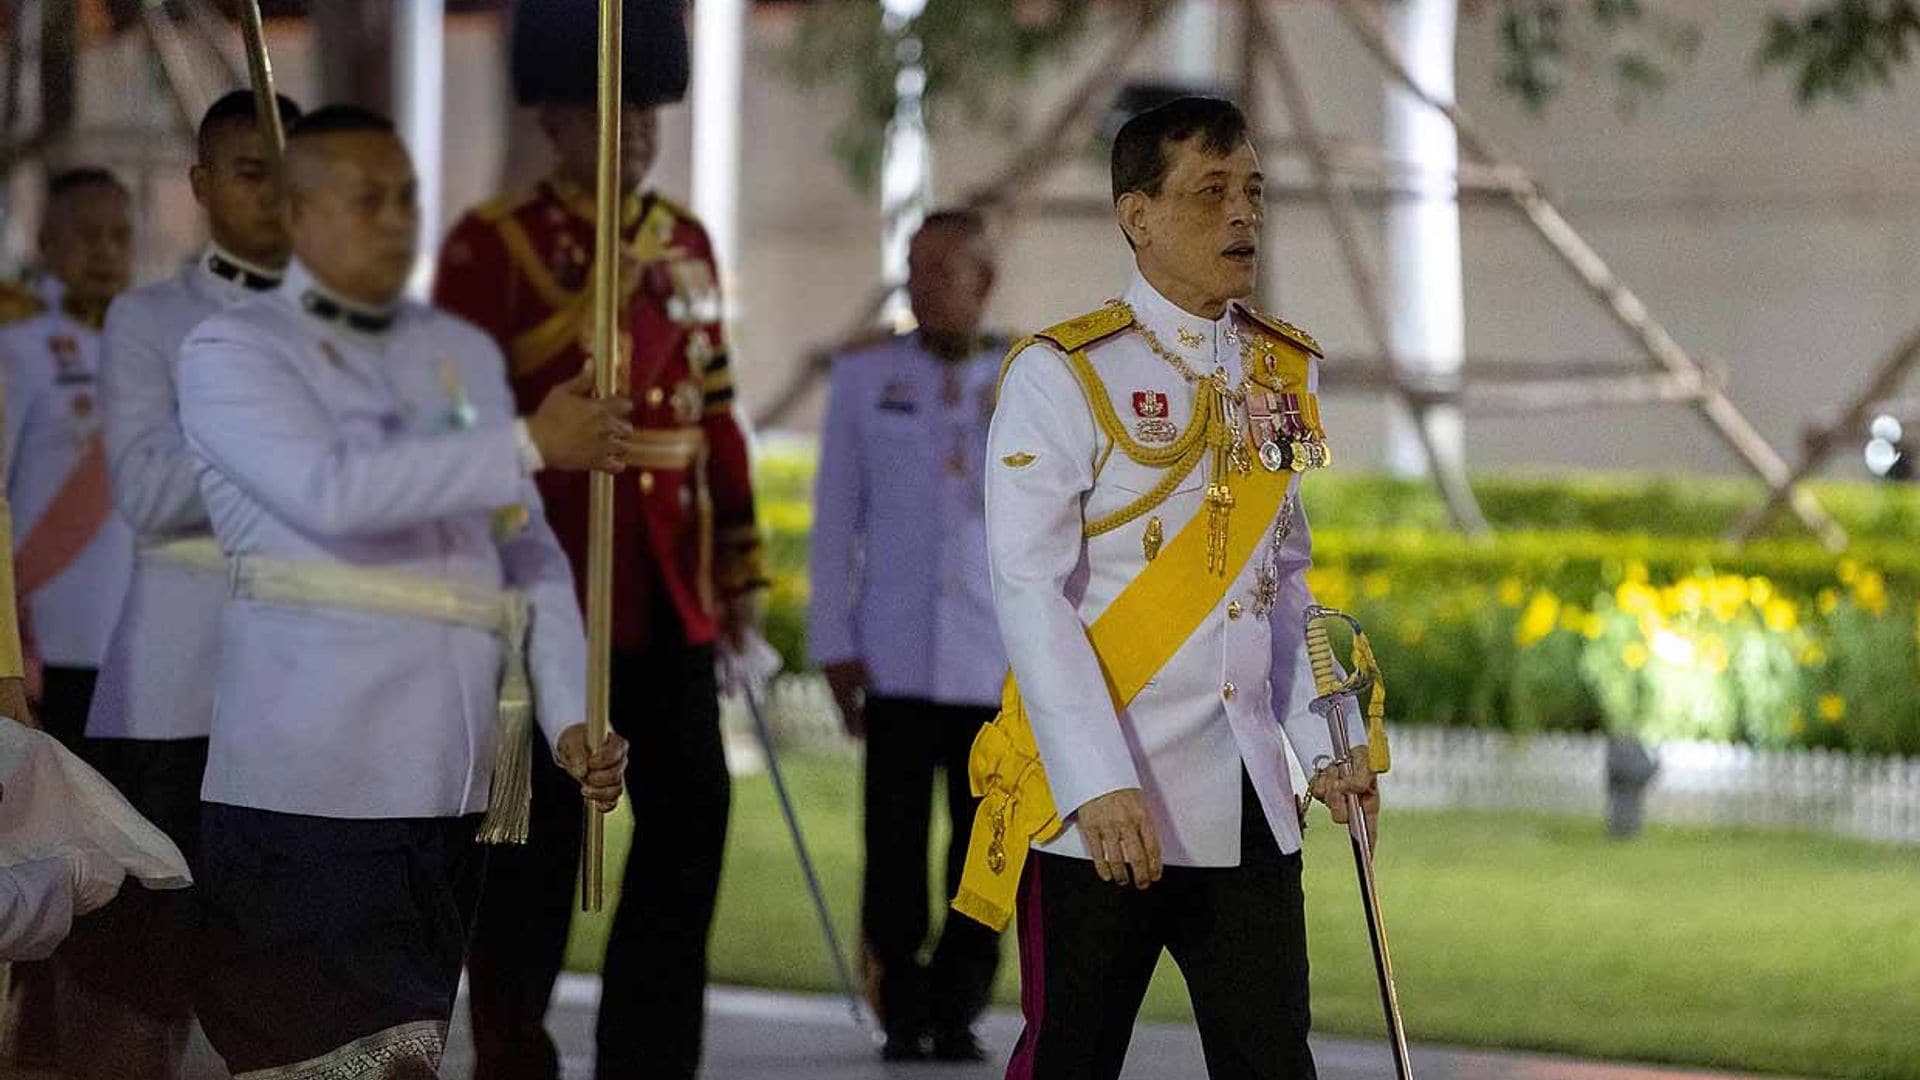 Nuevo capítulo en la polémica cuarentena del rey de Tailandia: se enfrenta a un fotógrafo en su vuelta a Alemania